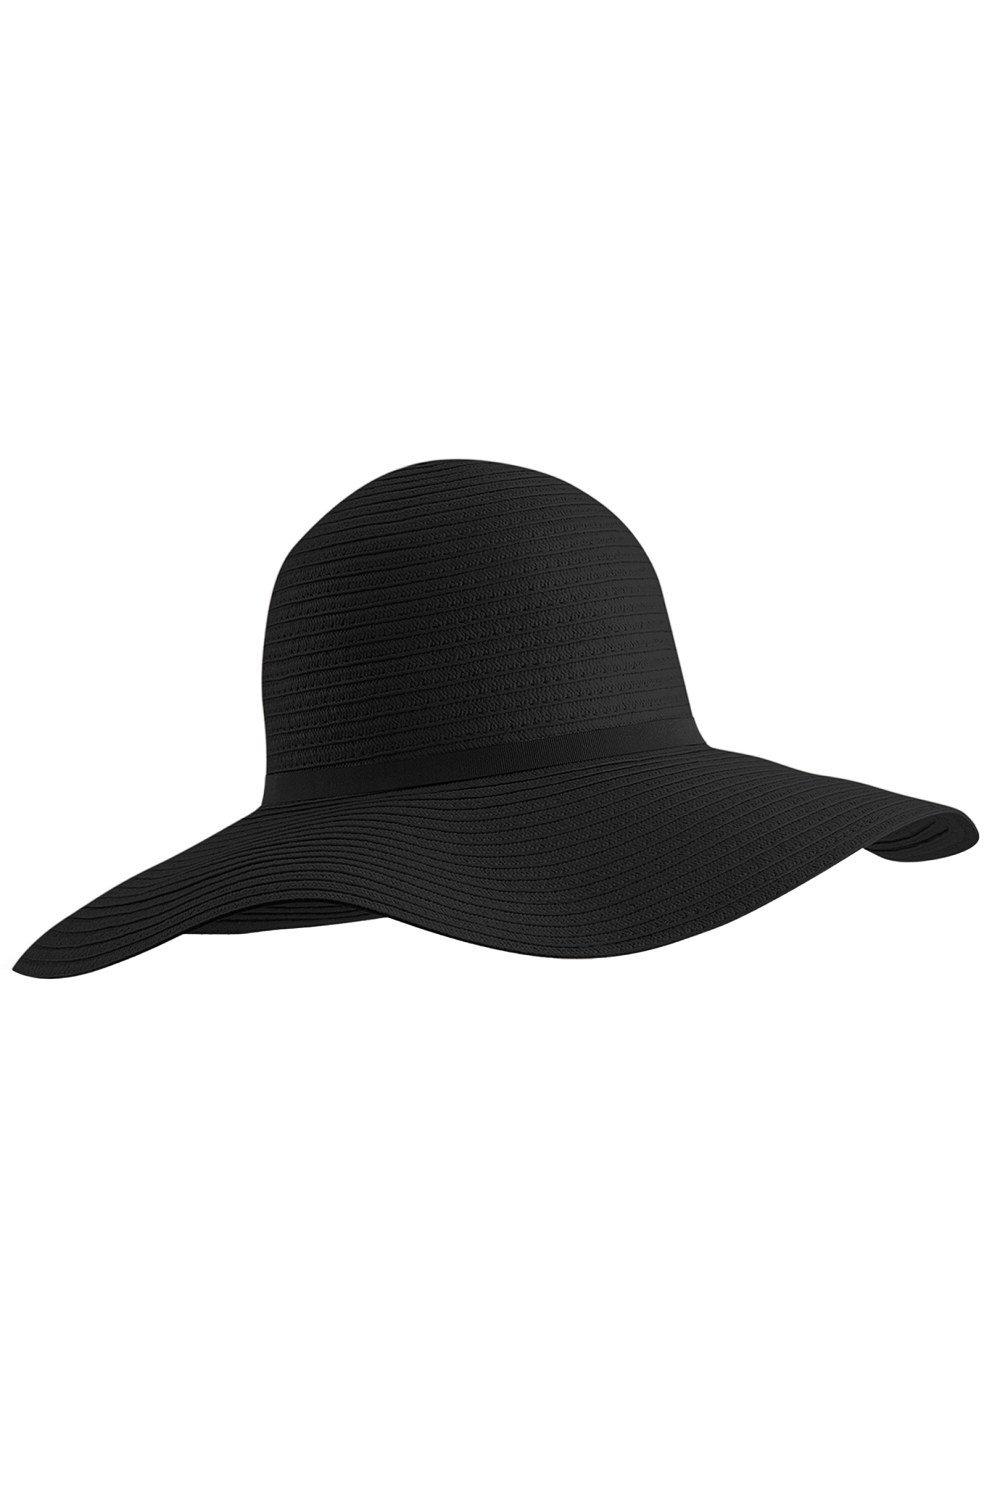 Шляпа от солнца с широкими полями Marbella Beechfield, черный